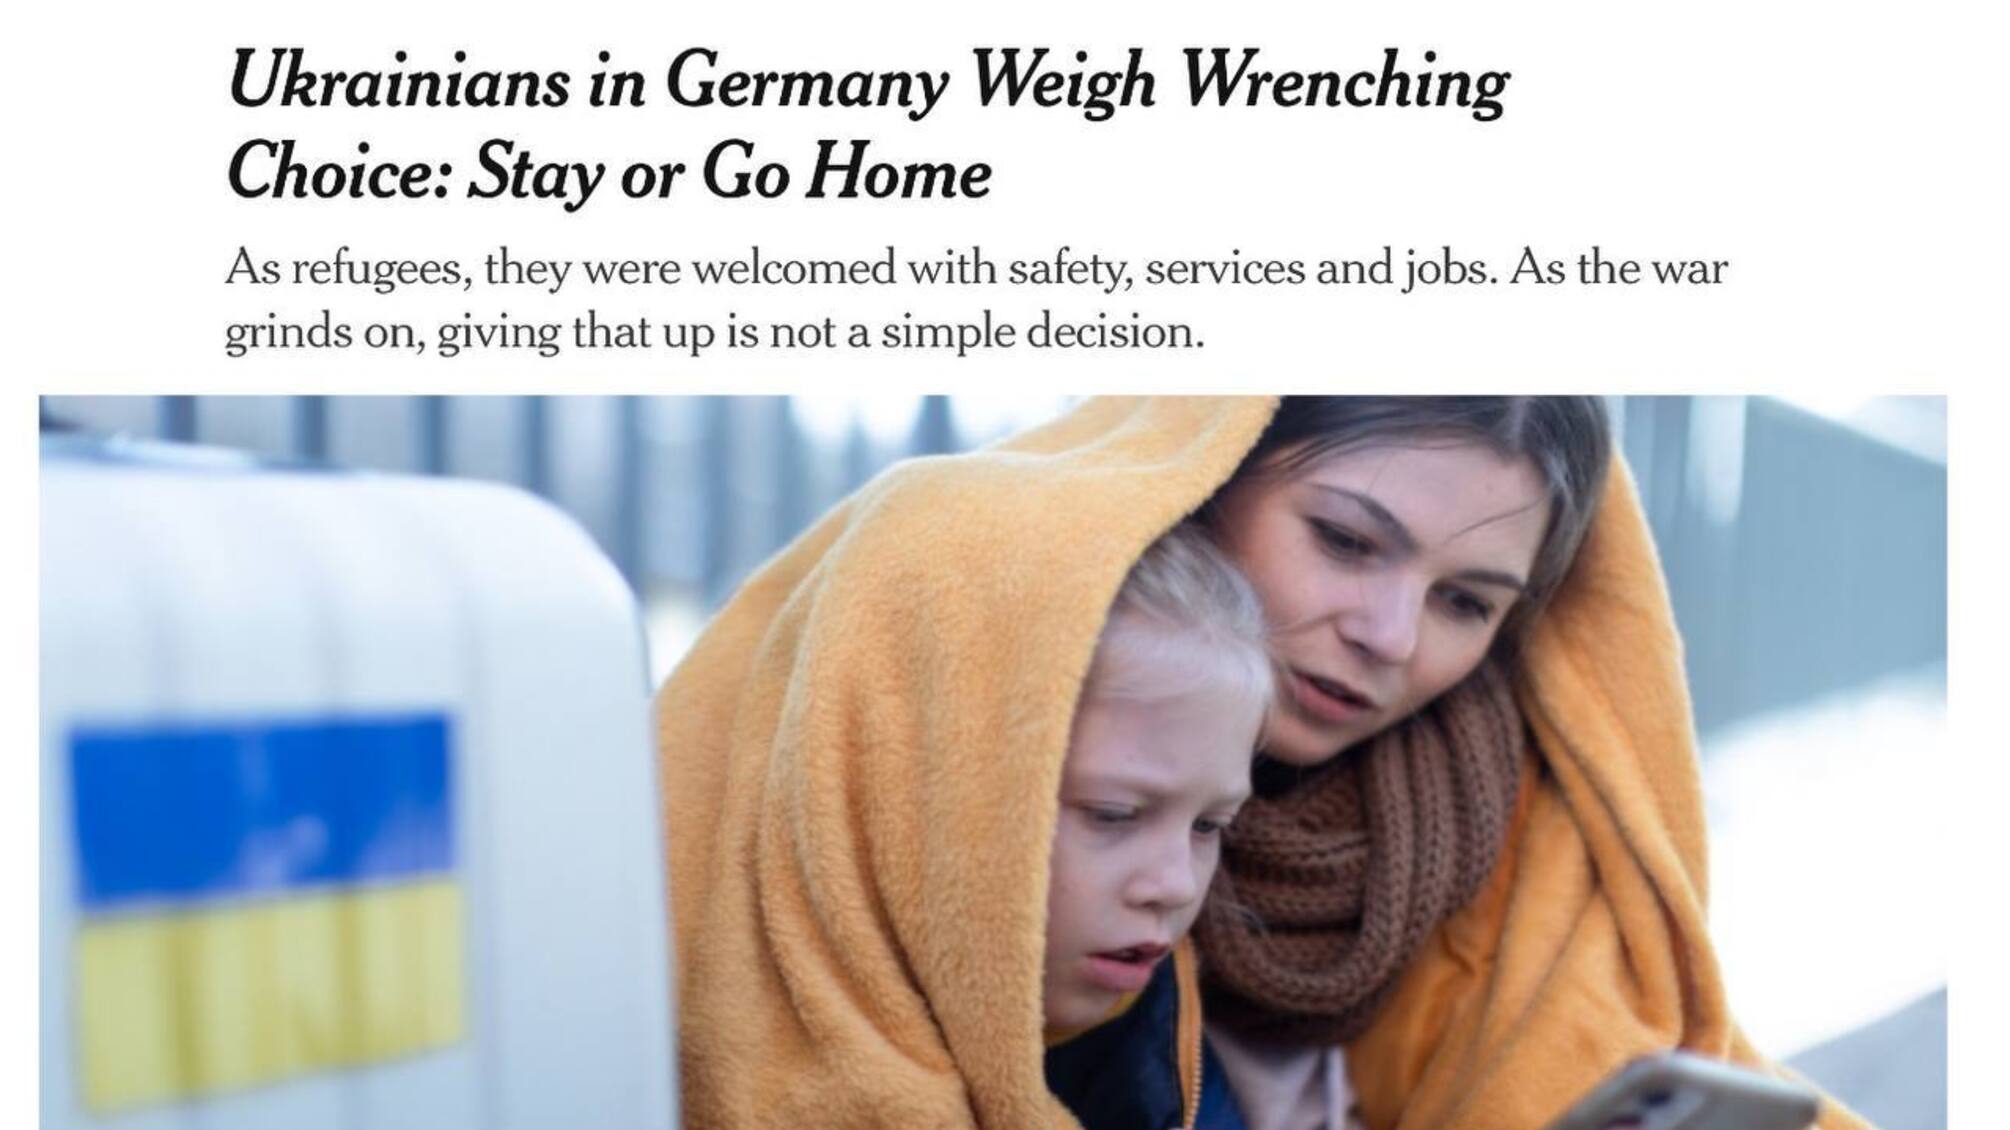  Германия предлагает украинским беженкам долгосрочное будущее в их стране